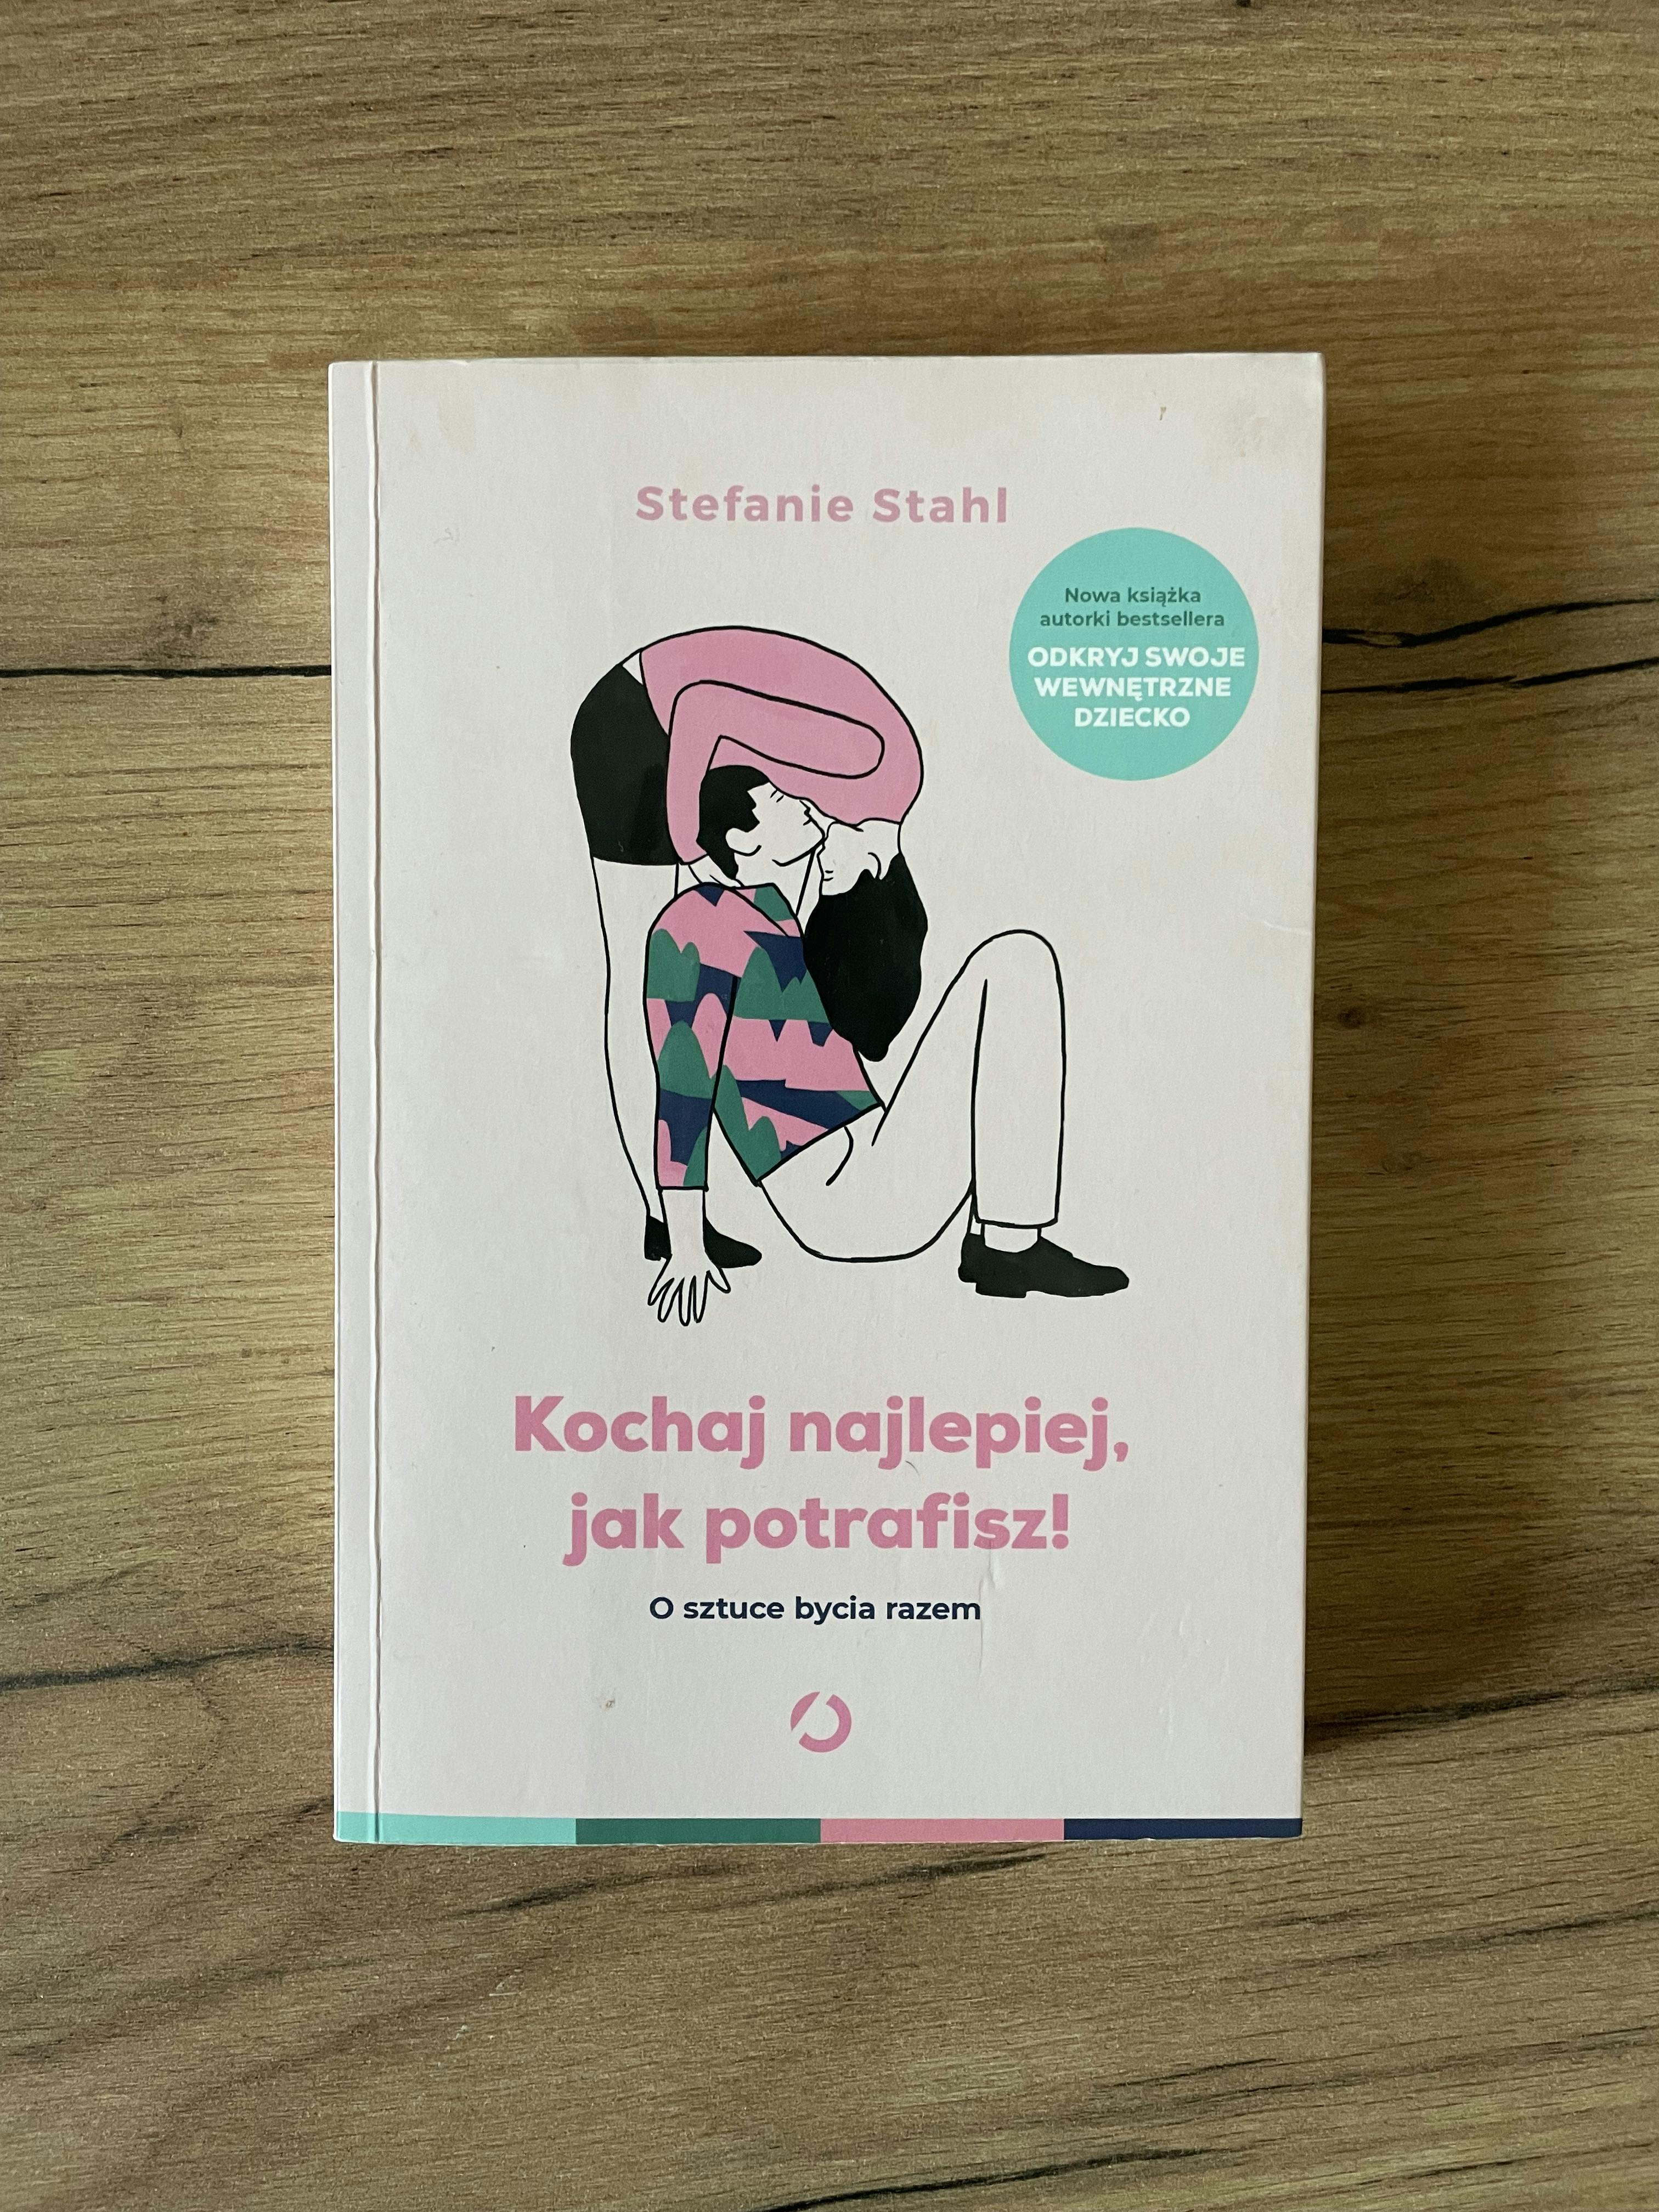 Picture of Książka "Kochaj najlepiej, jak potrafisz!". Autor: Stefanie Stahl.